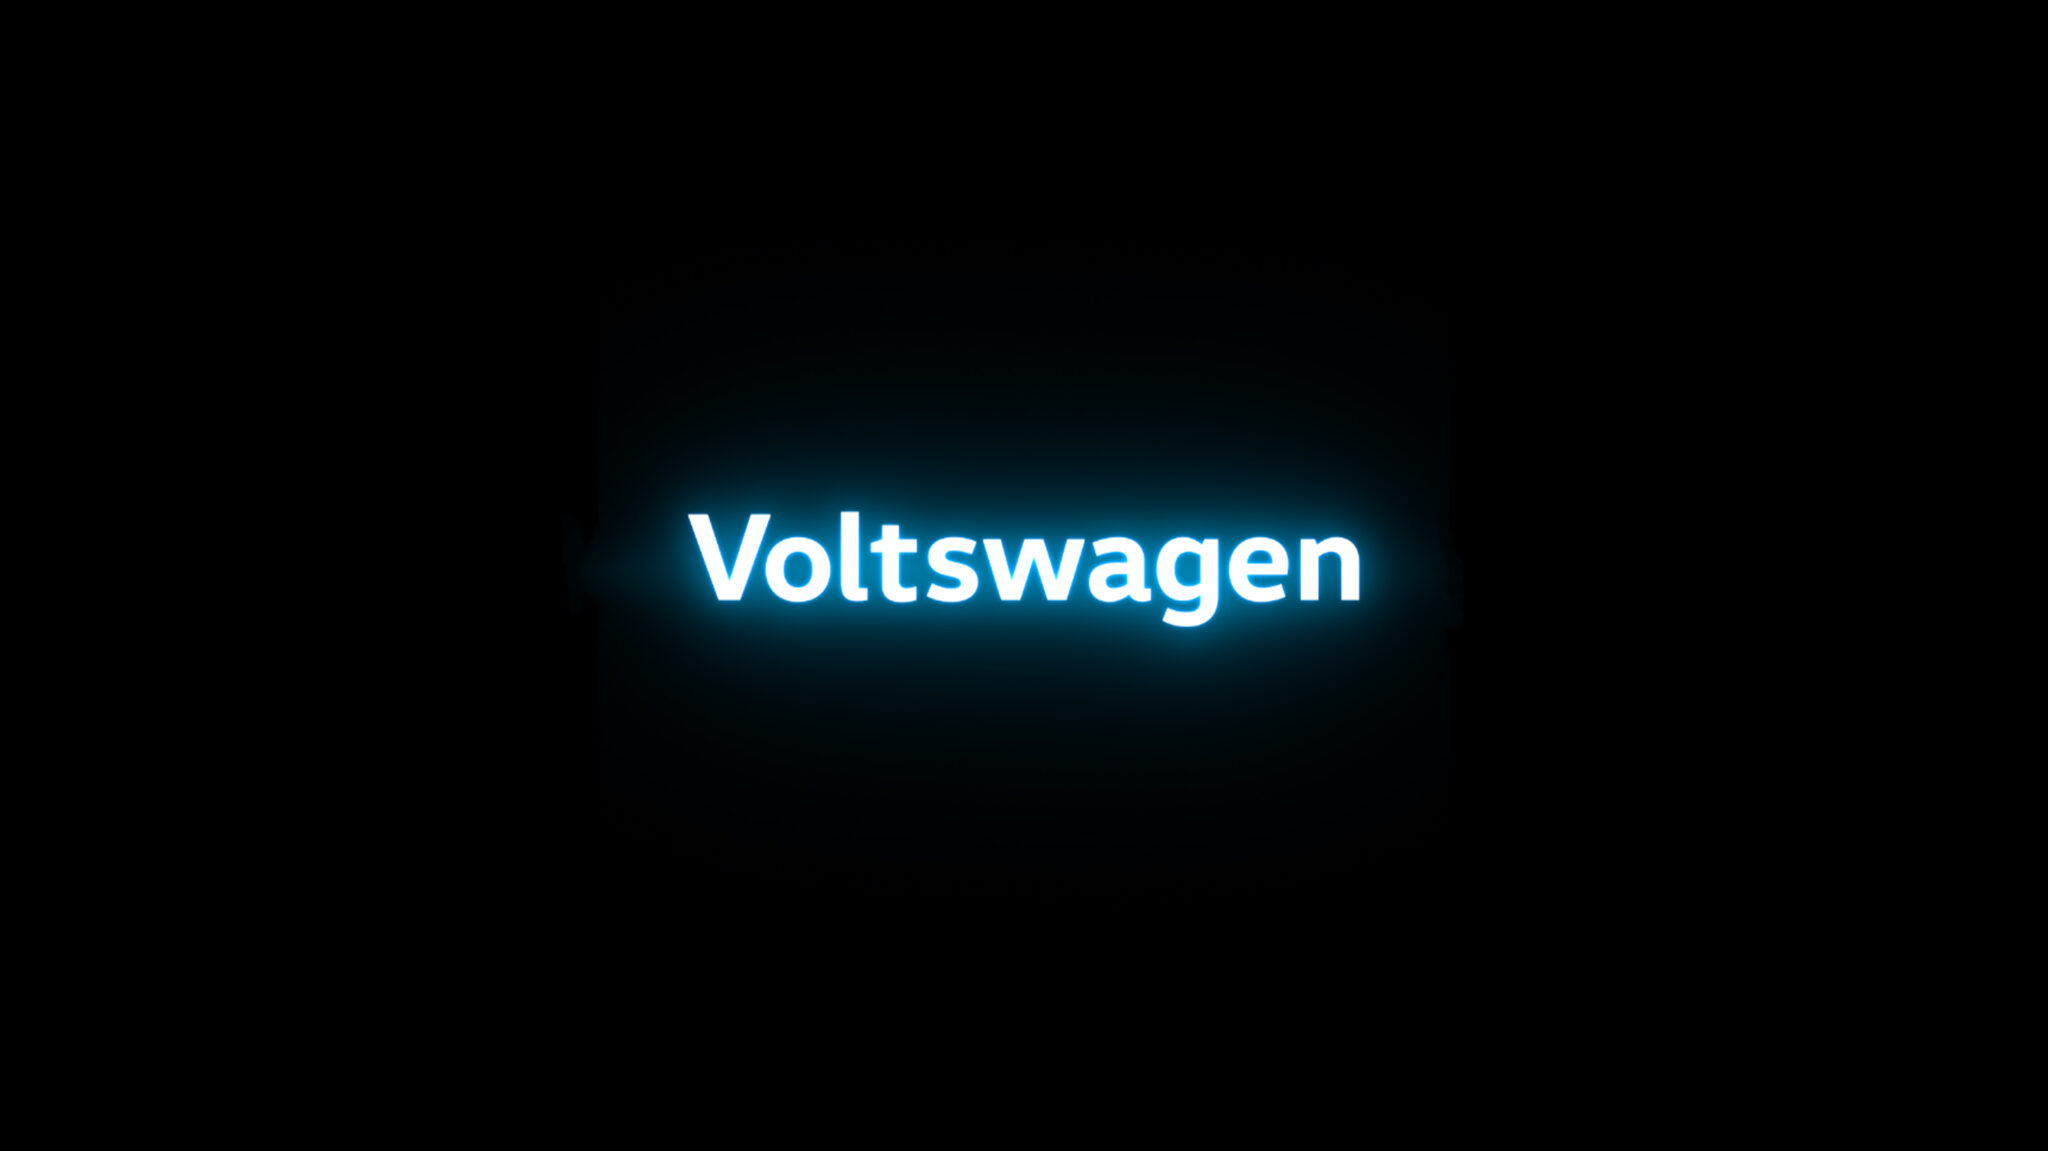 Voltswagen is dead, welcome back Volkswagen [Update]